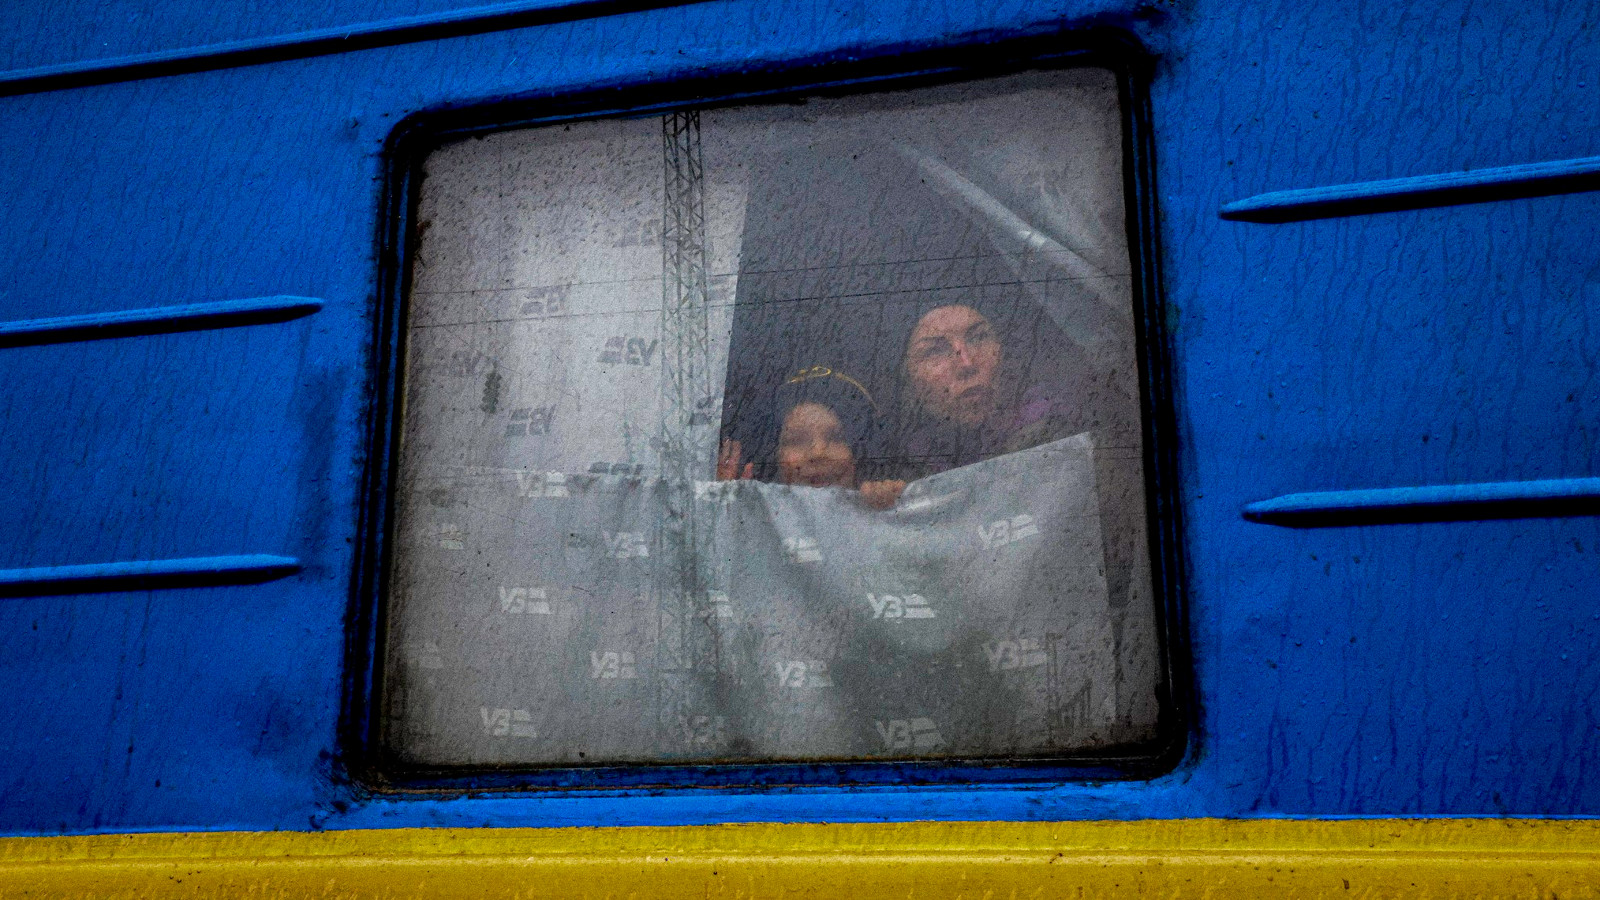 Kuvassa on junan ikkuna, jossa on naine ja vilkuttava poika.  Juna on sininen ja siinä on keltainen juova.